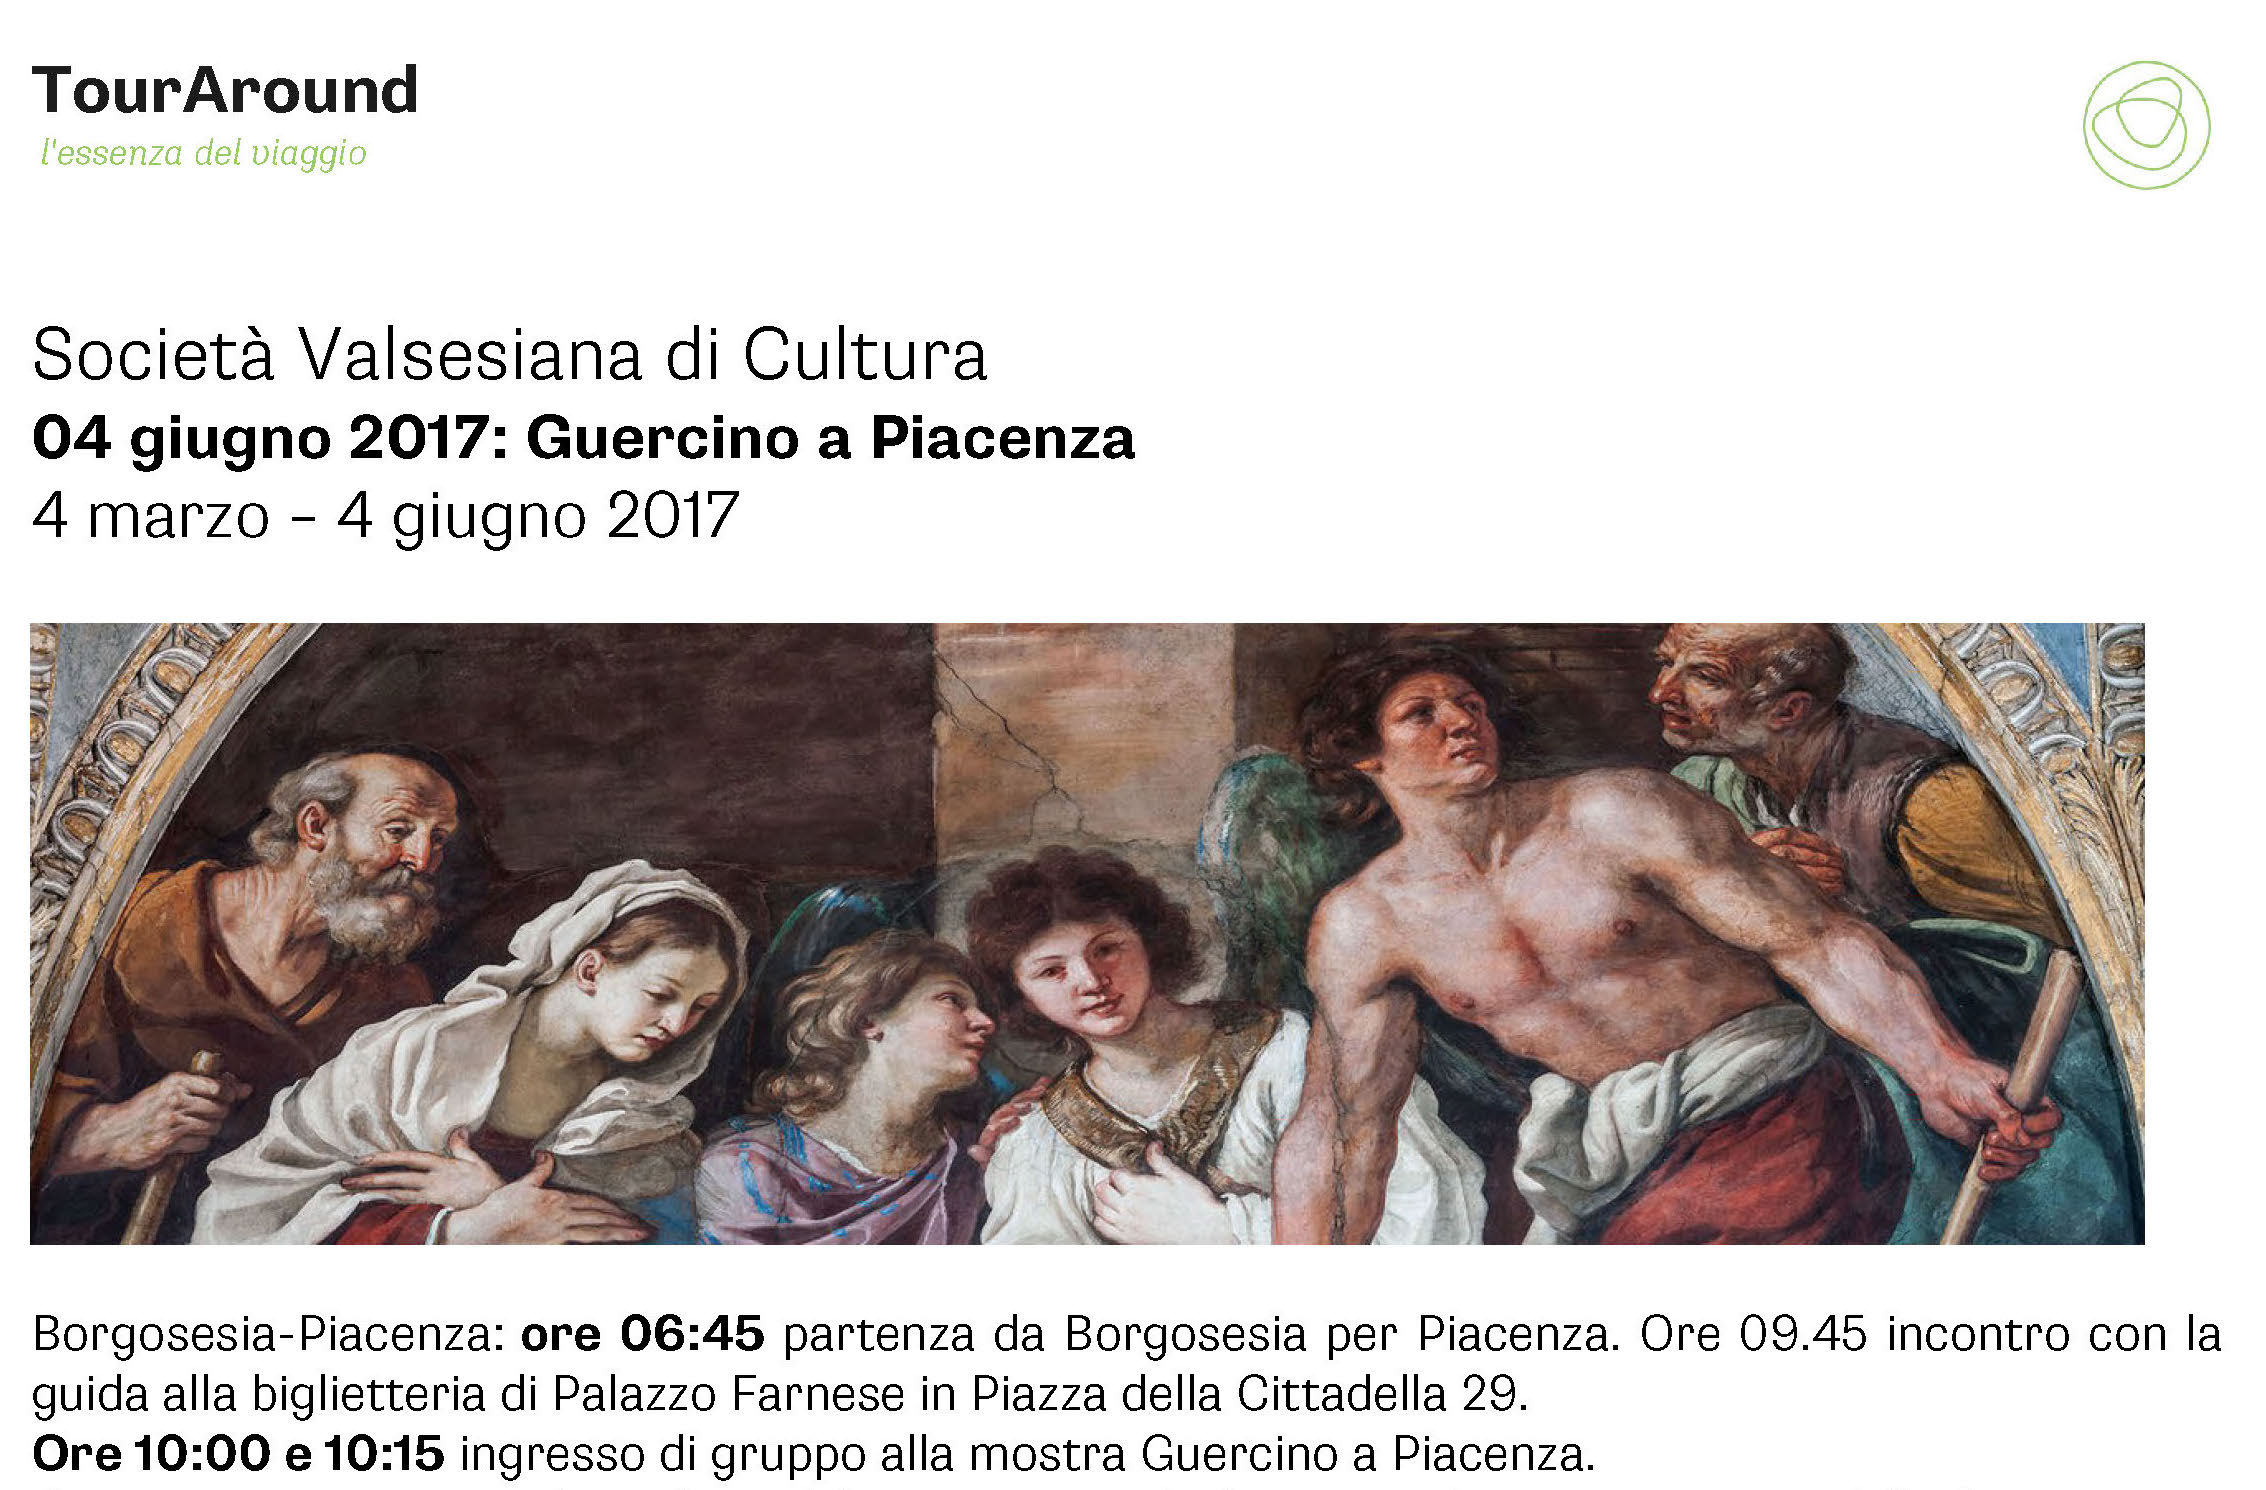 A Piacenza per la mostra del Guercino con la Società Valsesiana di Cultura